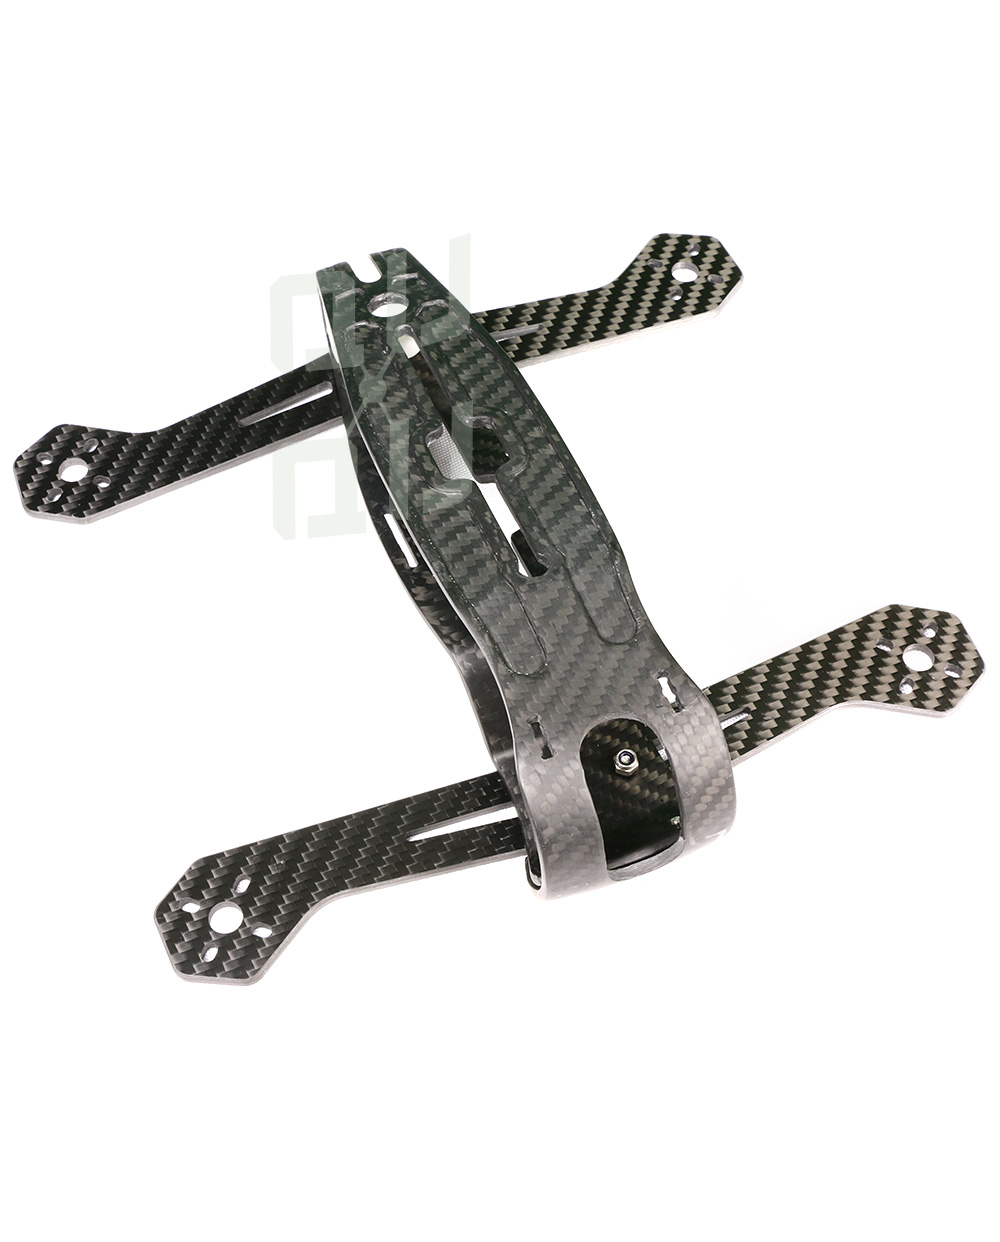 R-220 Racing drone 3d moulded carbon fiber frame